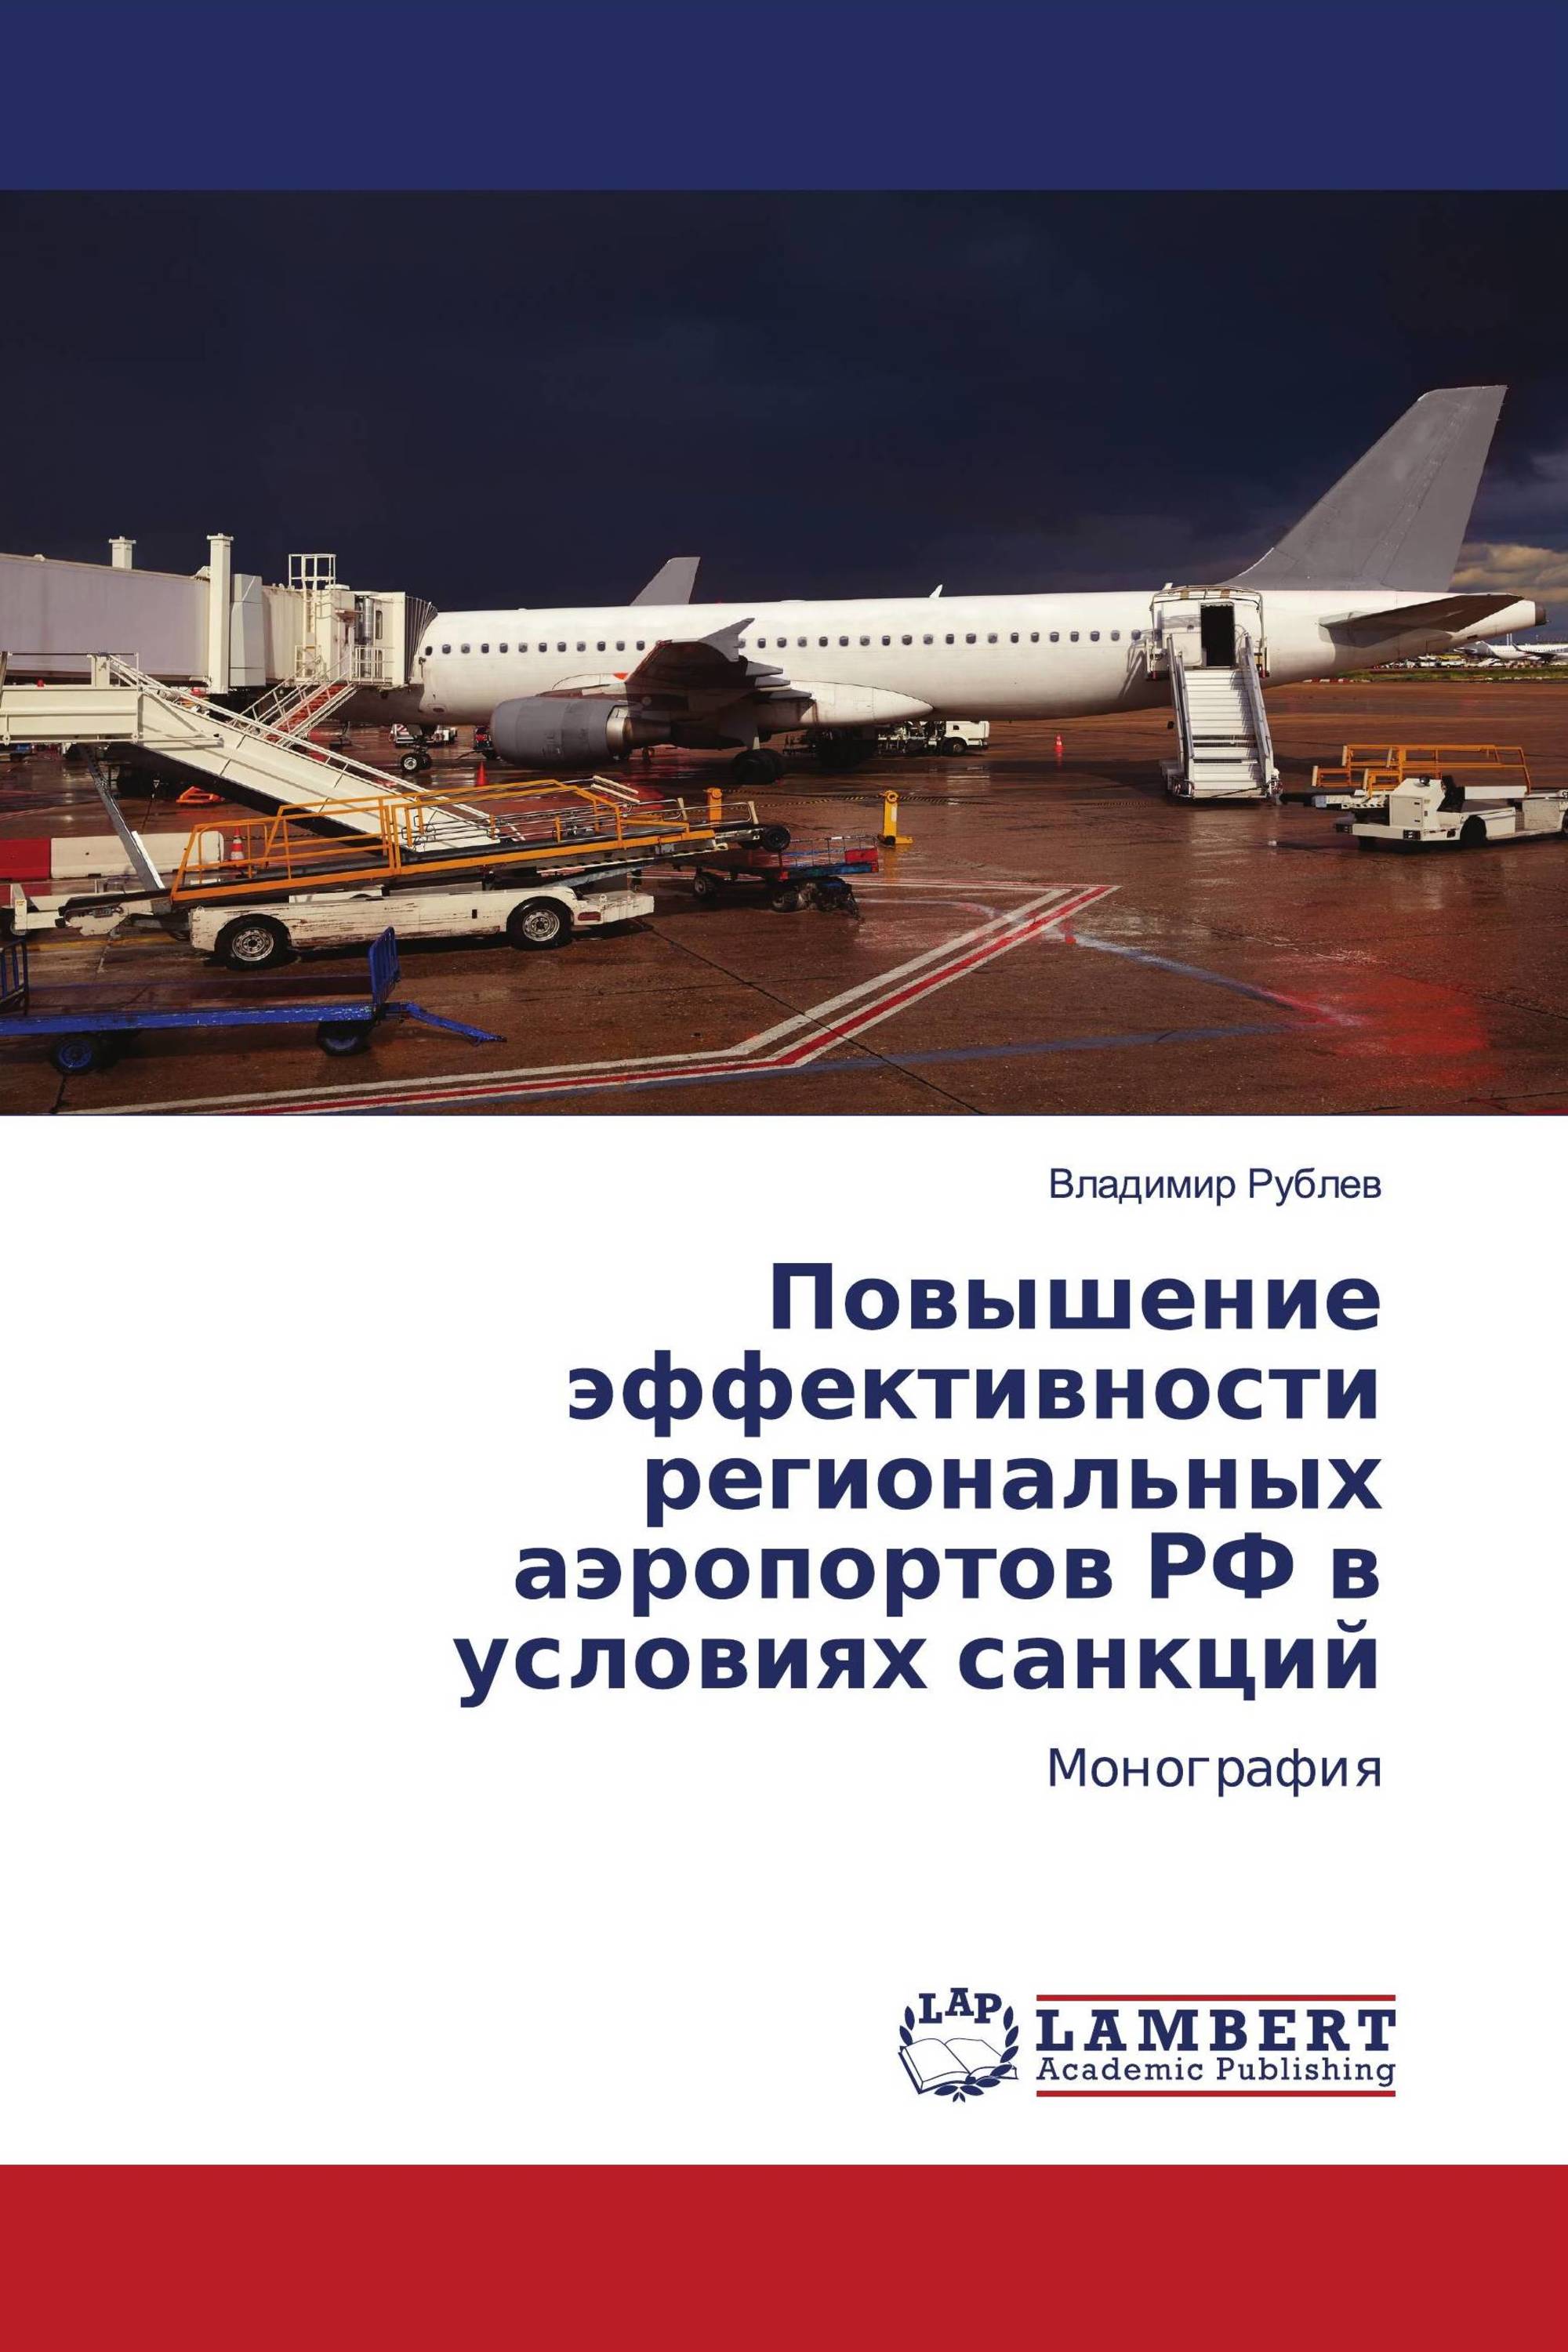 Повышение эффективности региональных аэропортов РФ в условиях санкций